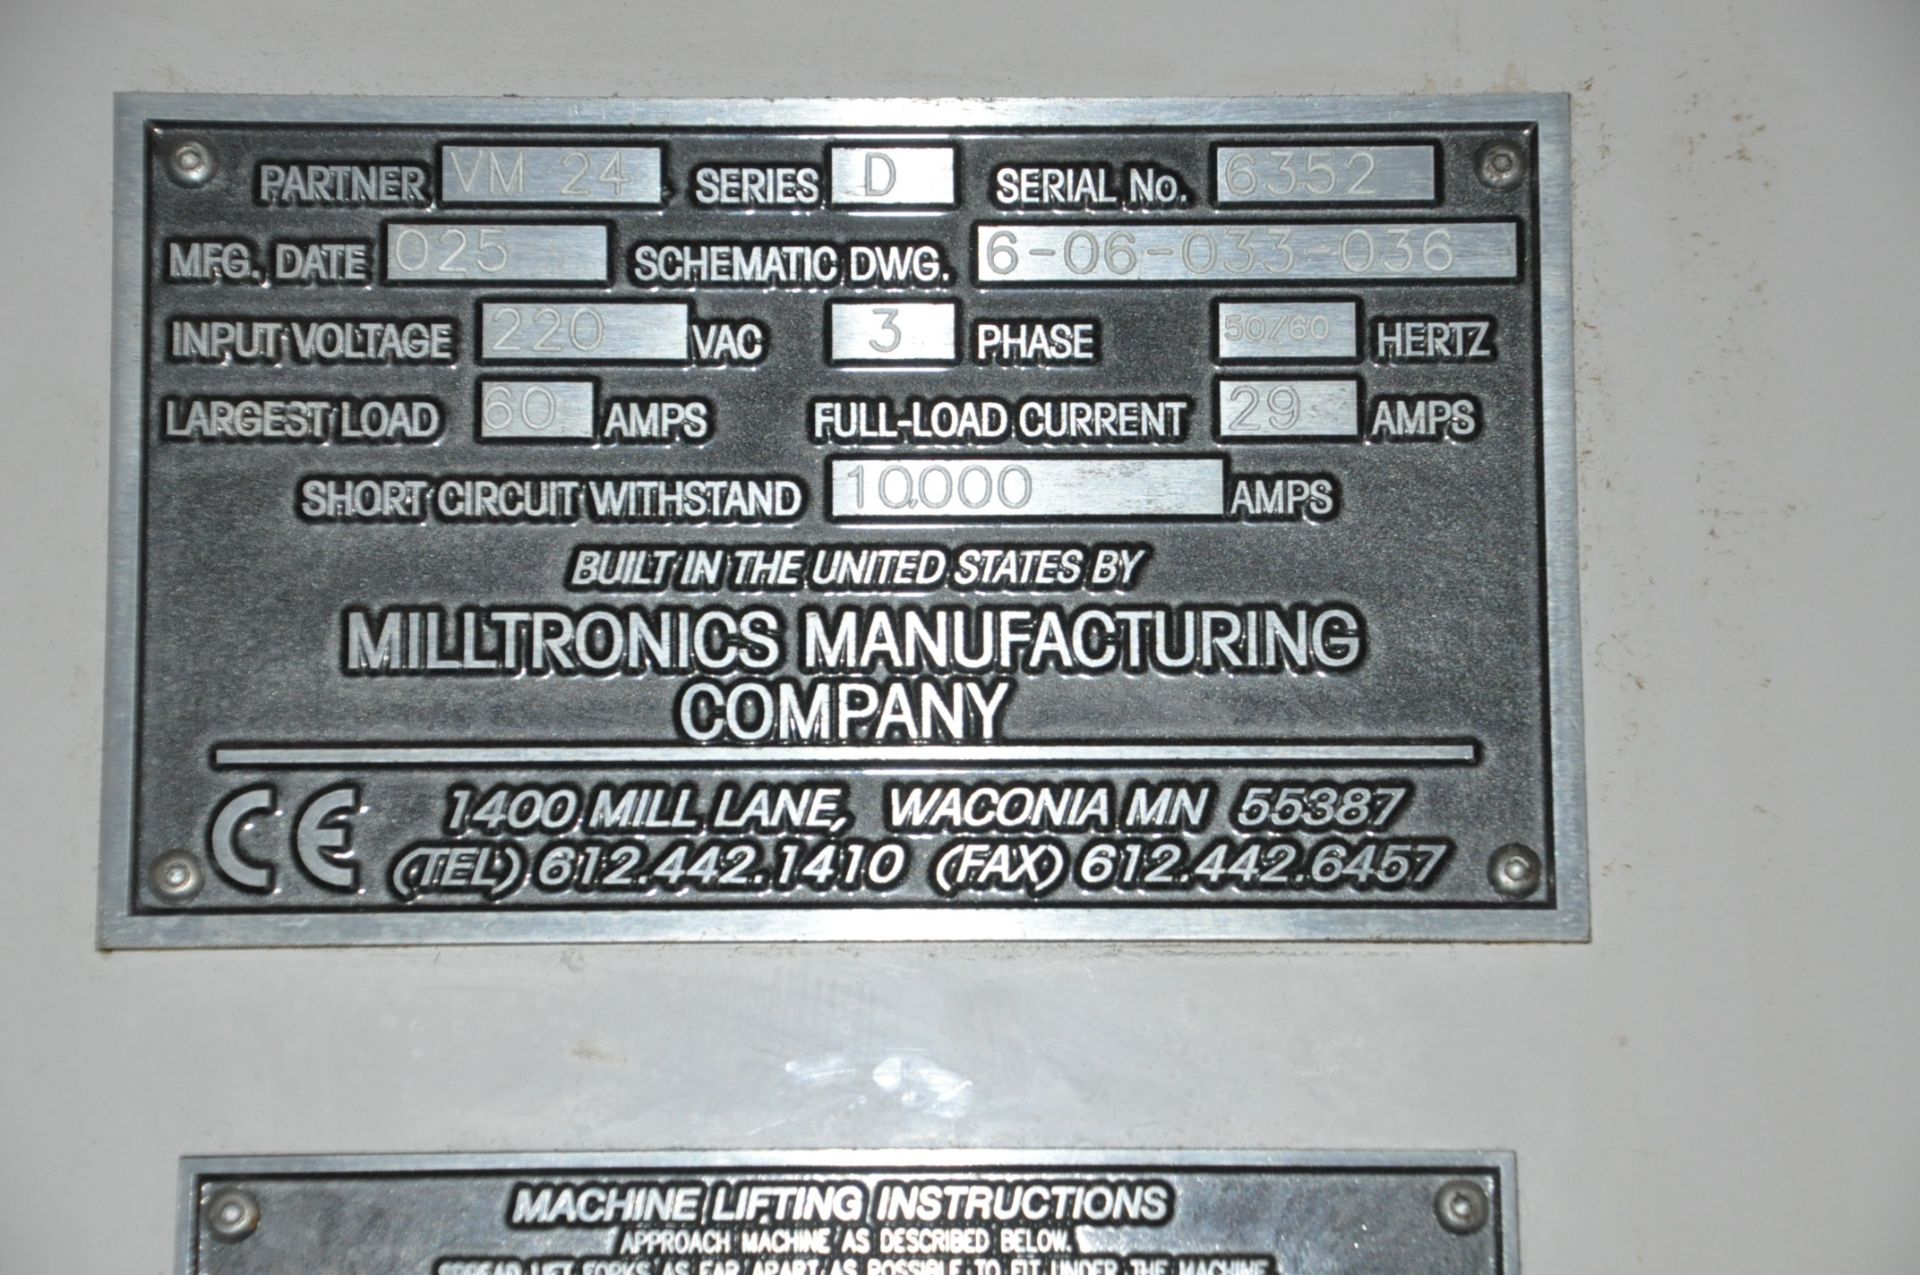 Milltronics Partner VM24 CNC Vertical Machining Center - Image 9 of 9